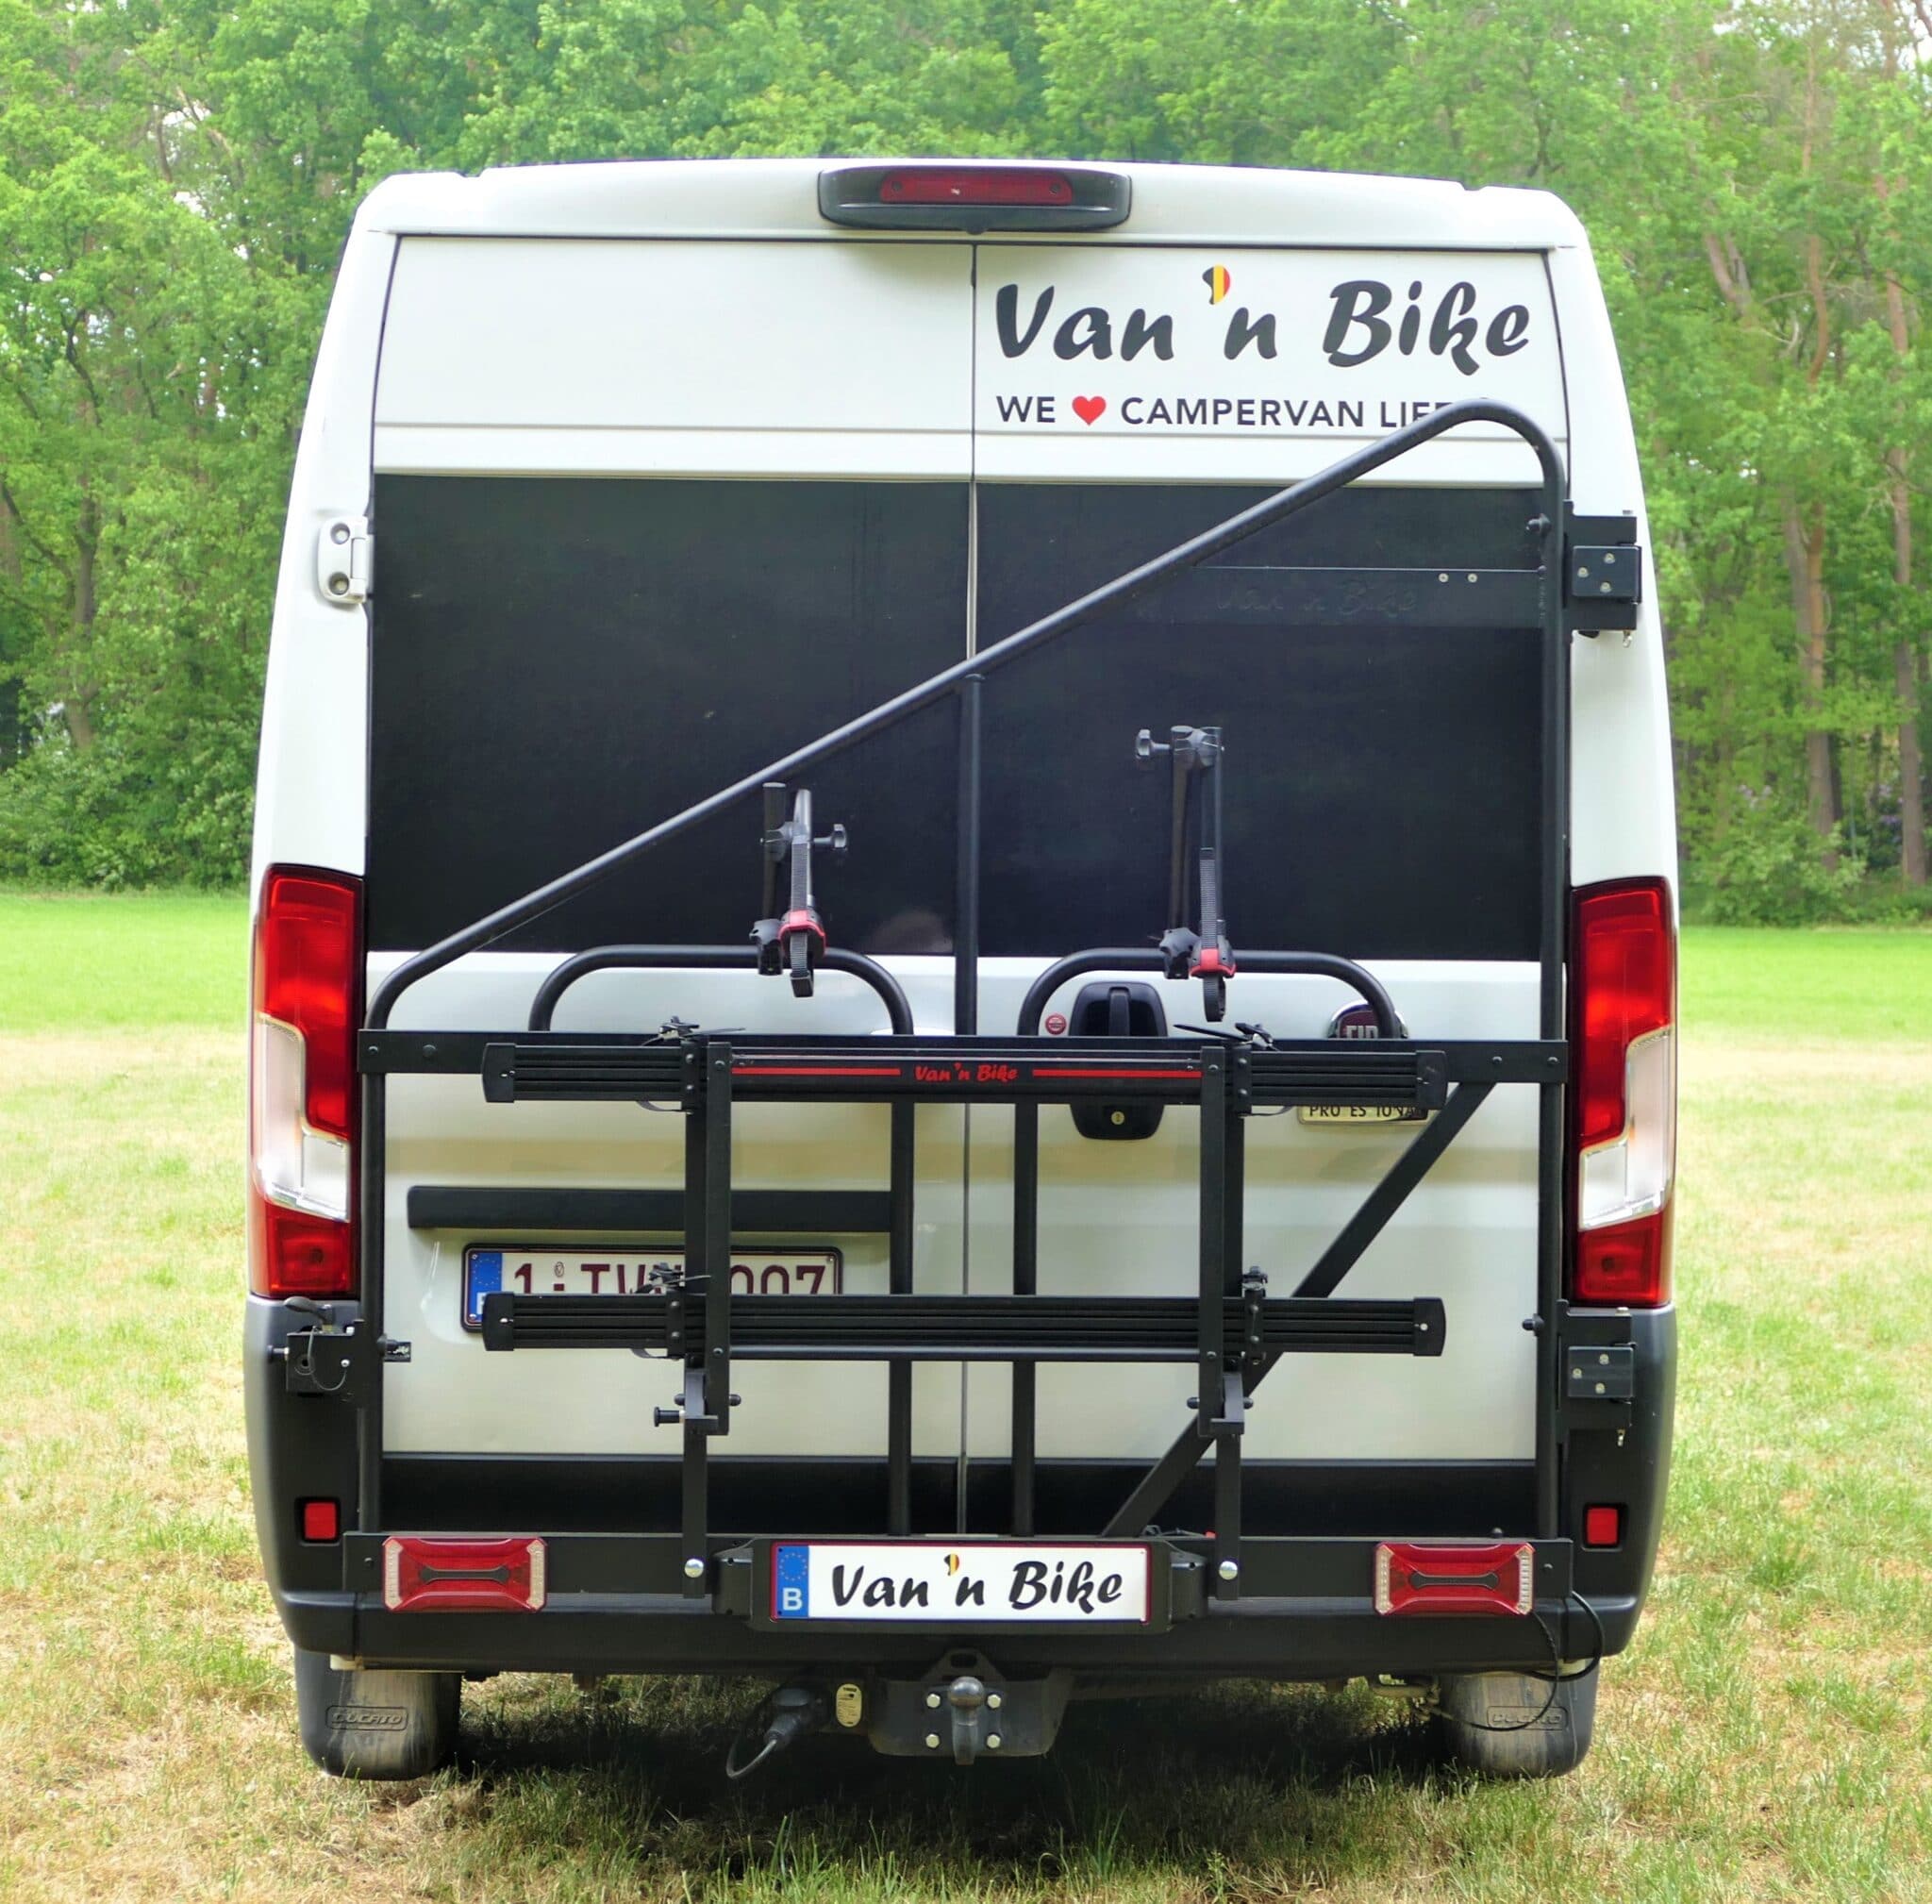 Verbaasd Afdrukken verbergen Van 'n Bike All in One - Van 'n Bike draagsysteem voor CamperVans